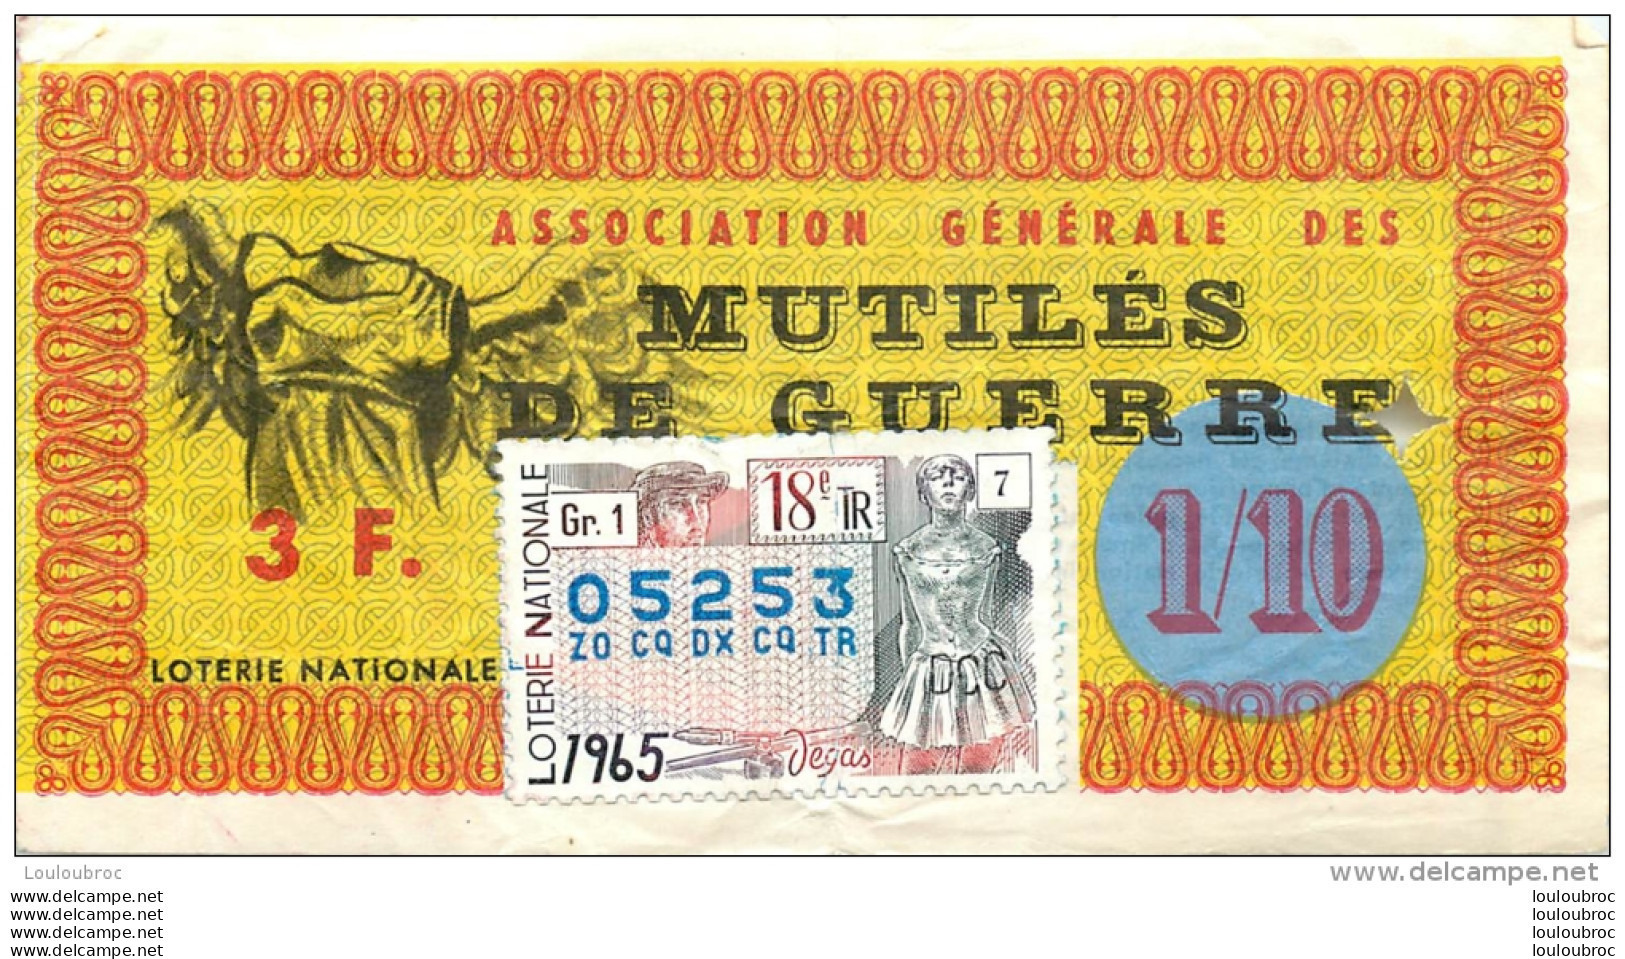 BILLET DE LOTERIE NATIONALE 1965 ASSOCIATION GENERALE DES MUTILES DE GUERRE - Billets De Loterie